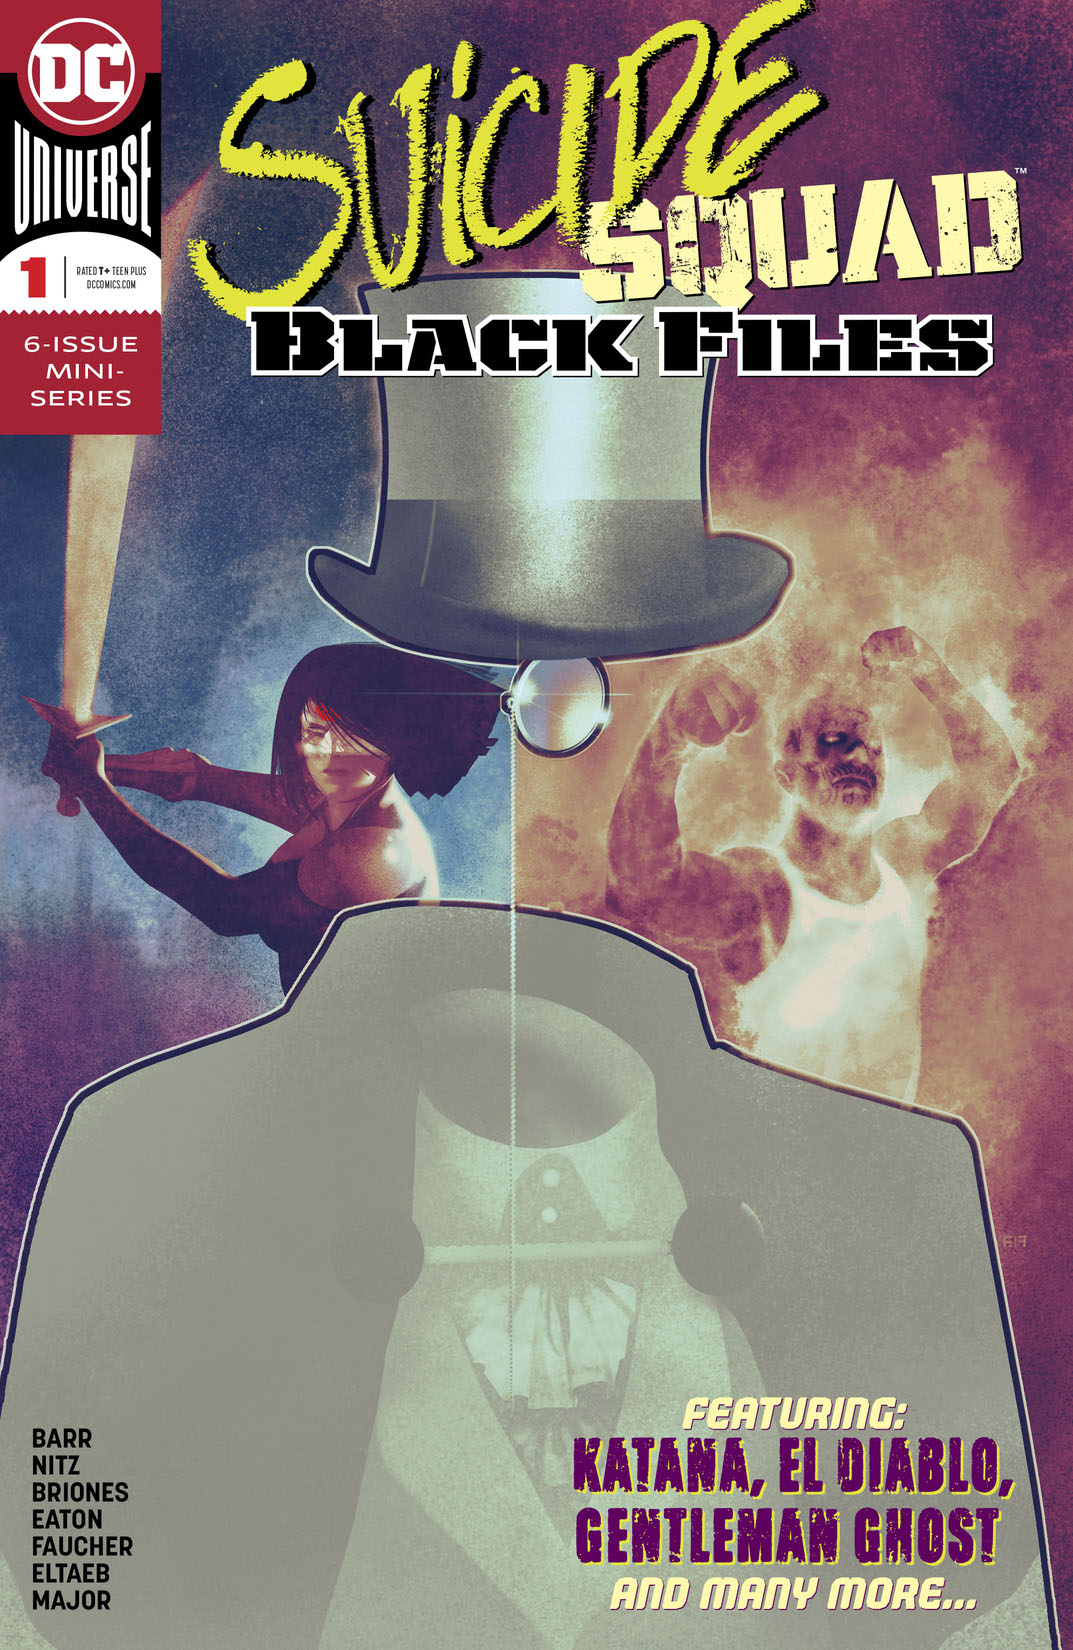 Suicide Squad Black Files #1 preview images